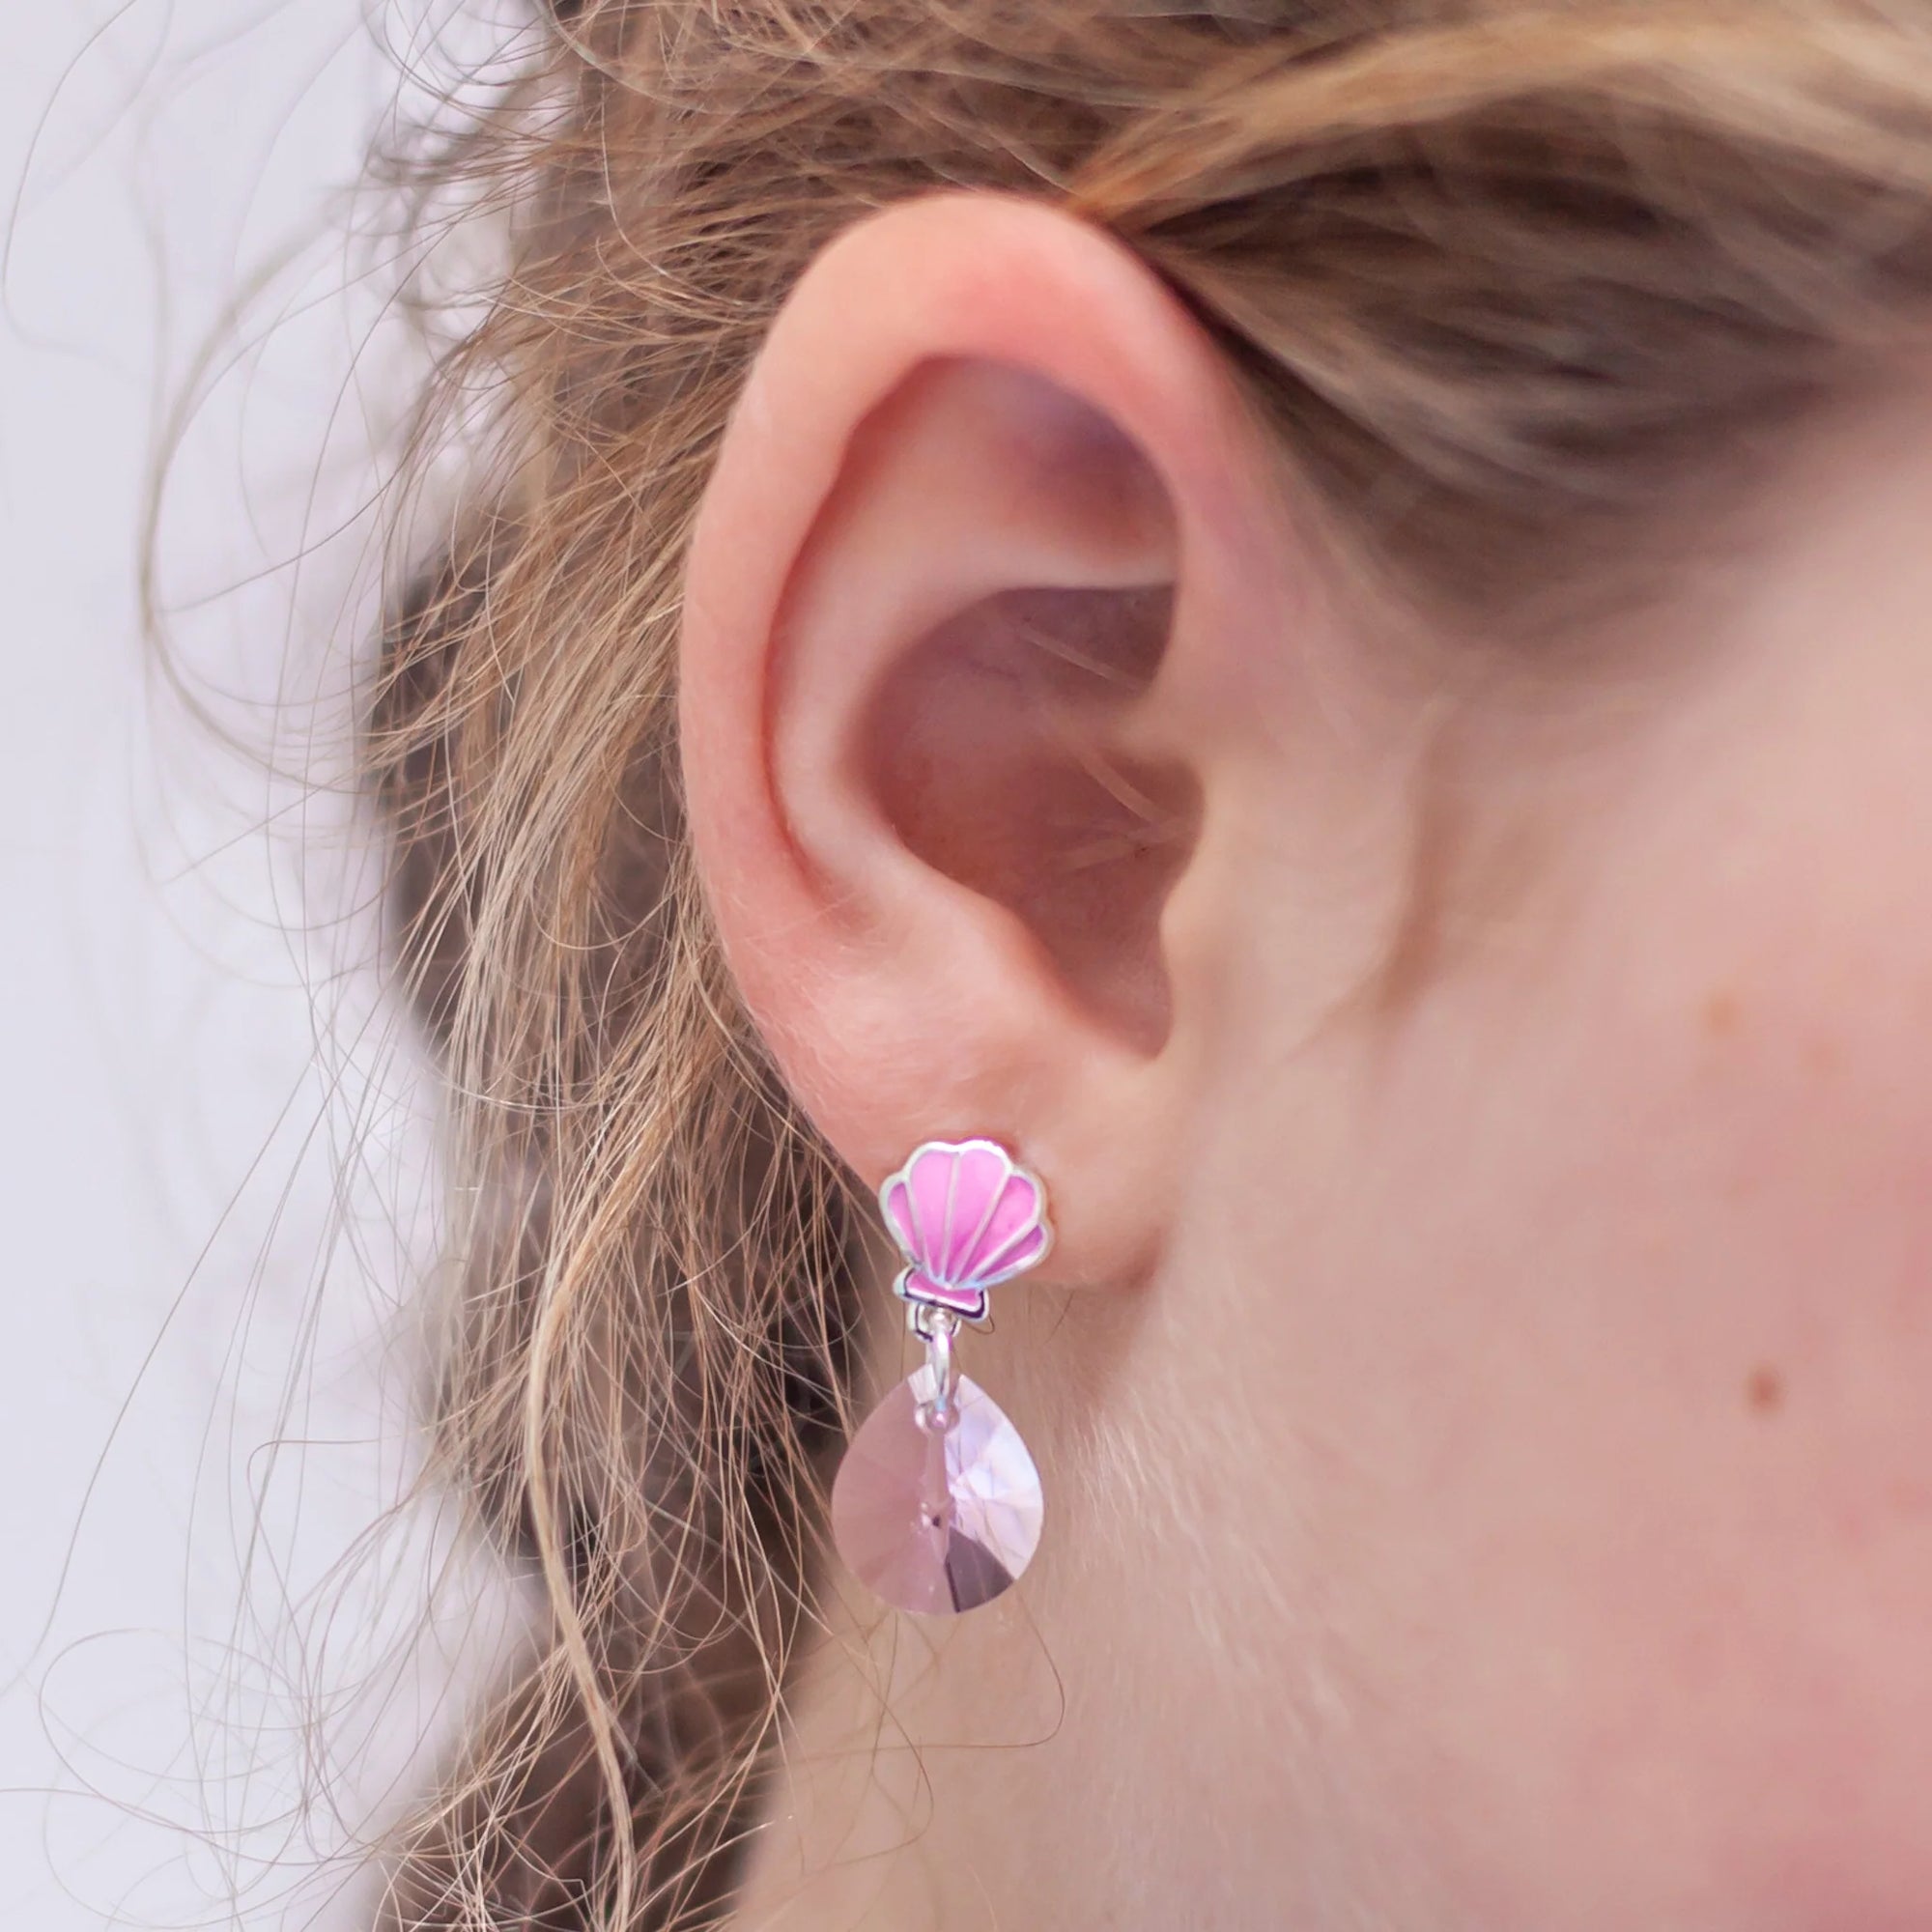 Mermaid: Ocean Treasure Earrings - Pink